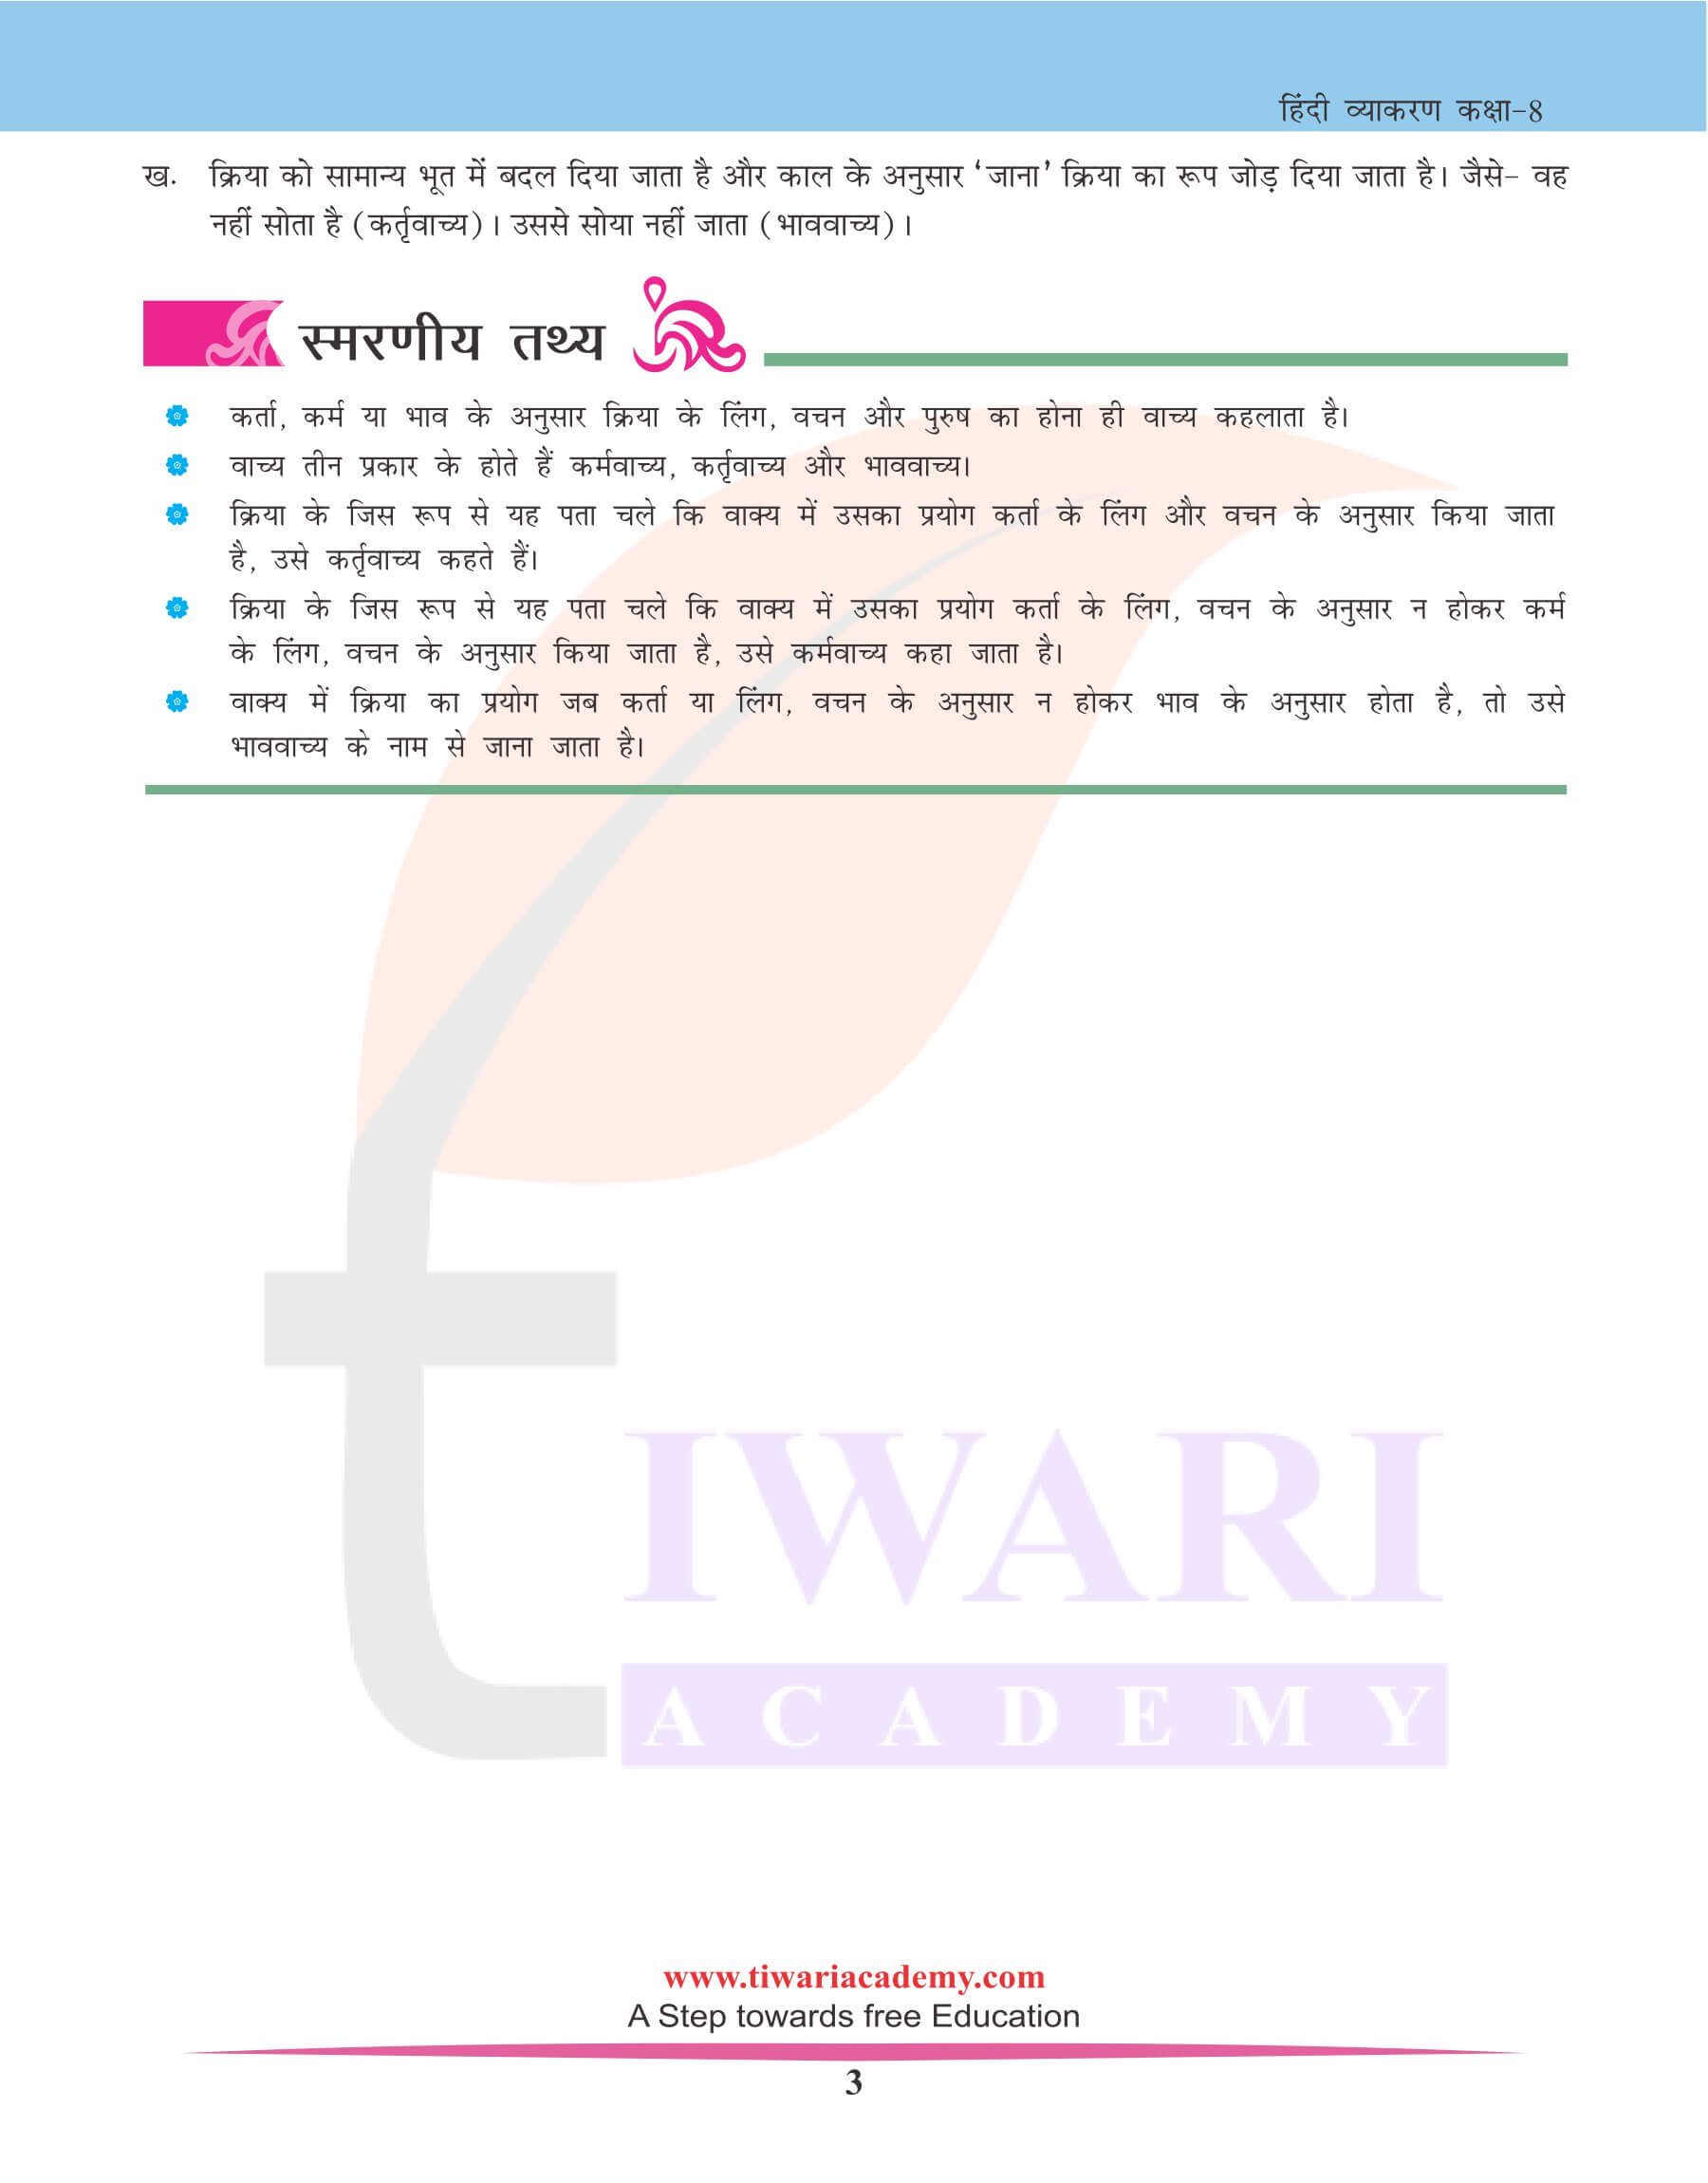 कक्षा 8 हिंदी व्याकरण वाच्य